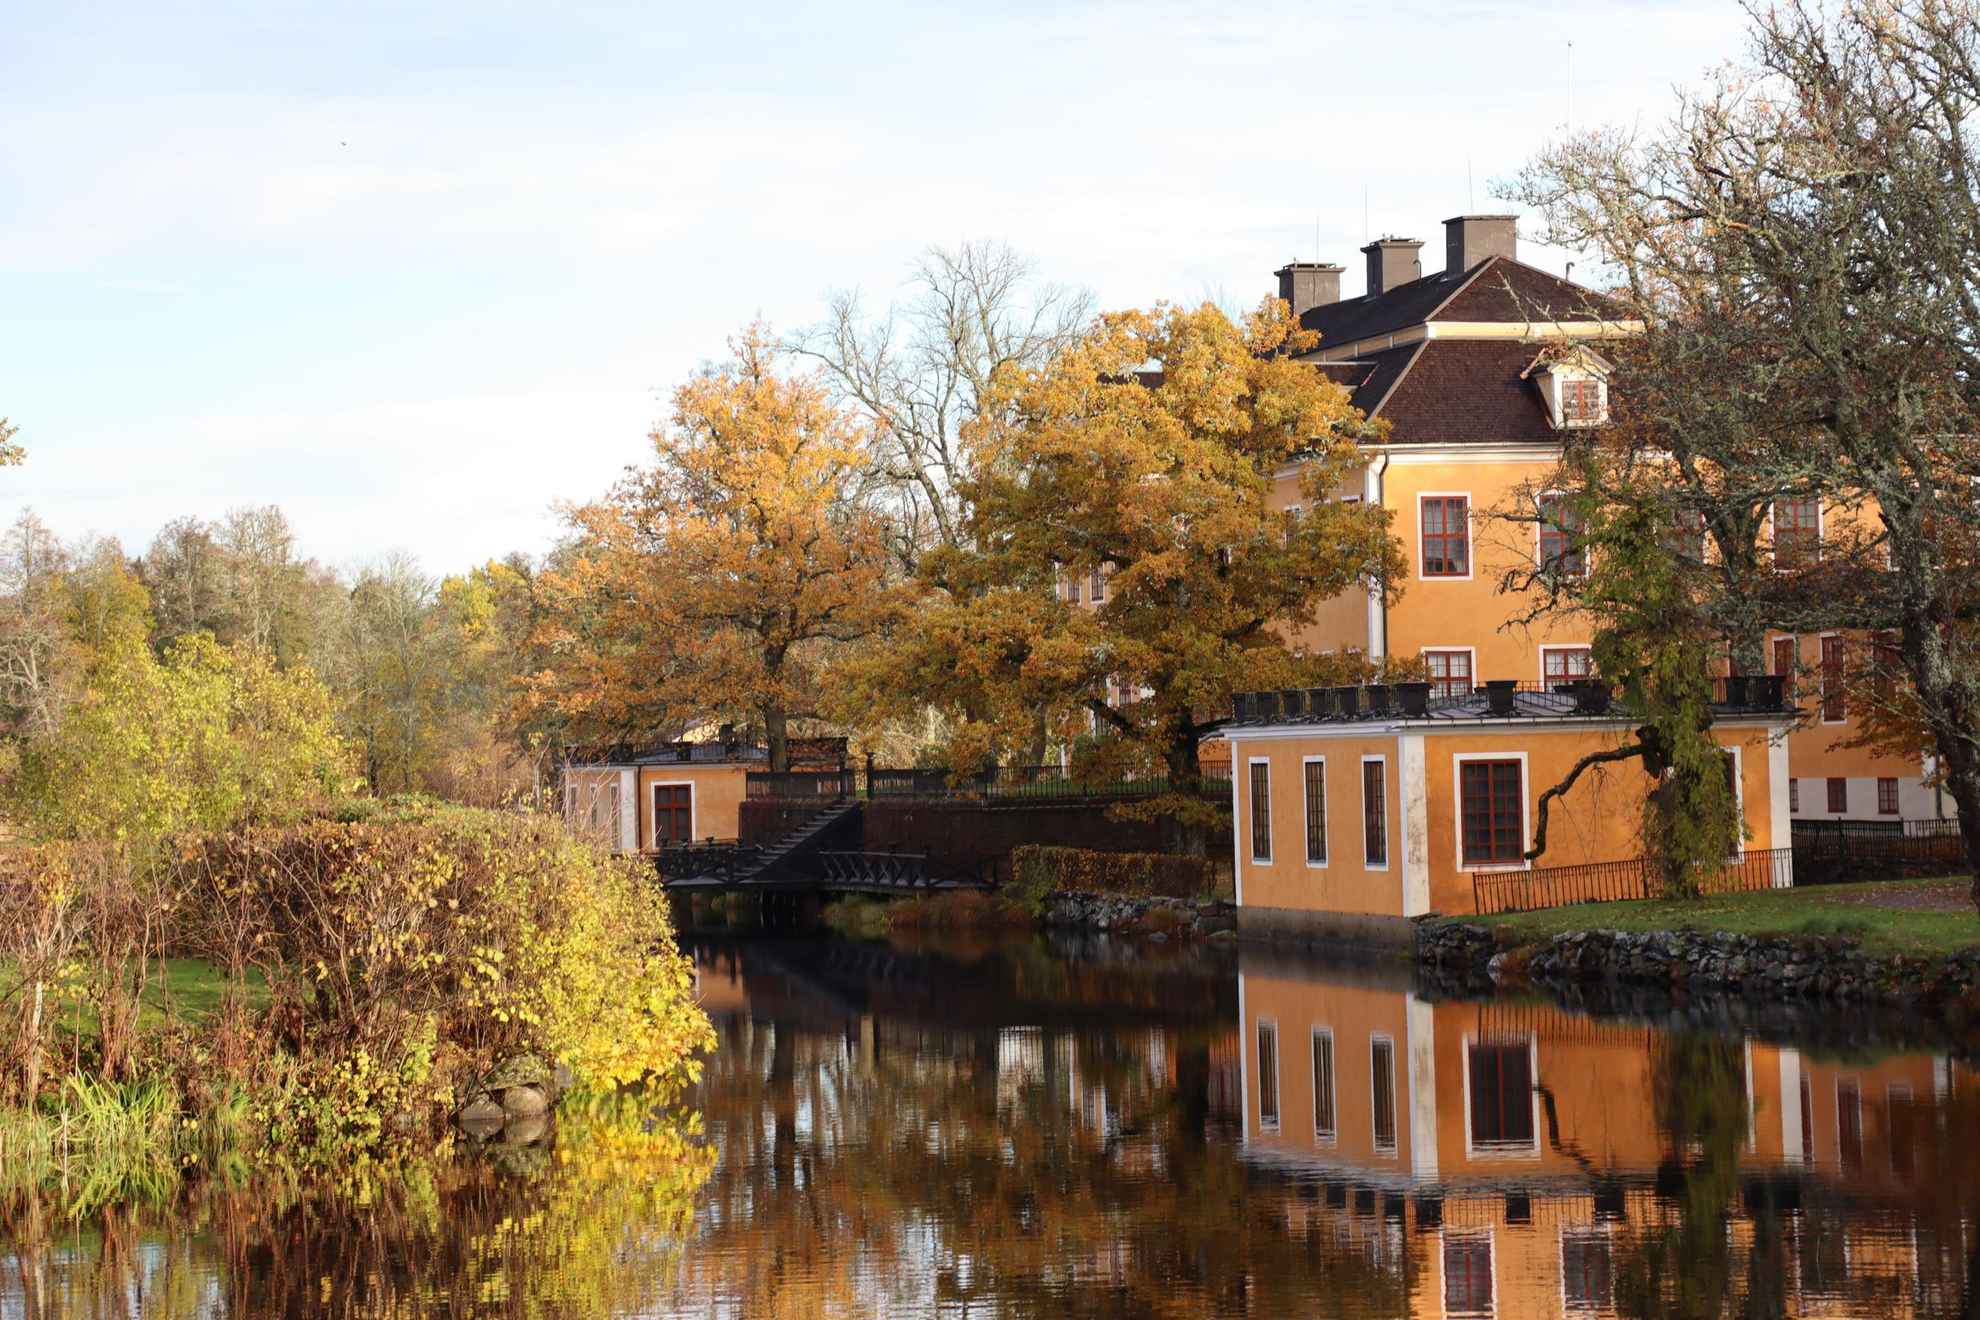 De huizen van Lövstabruk met oranje gevel en witte biesjes aan het water.